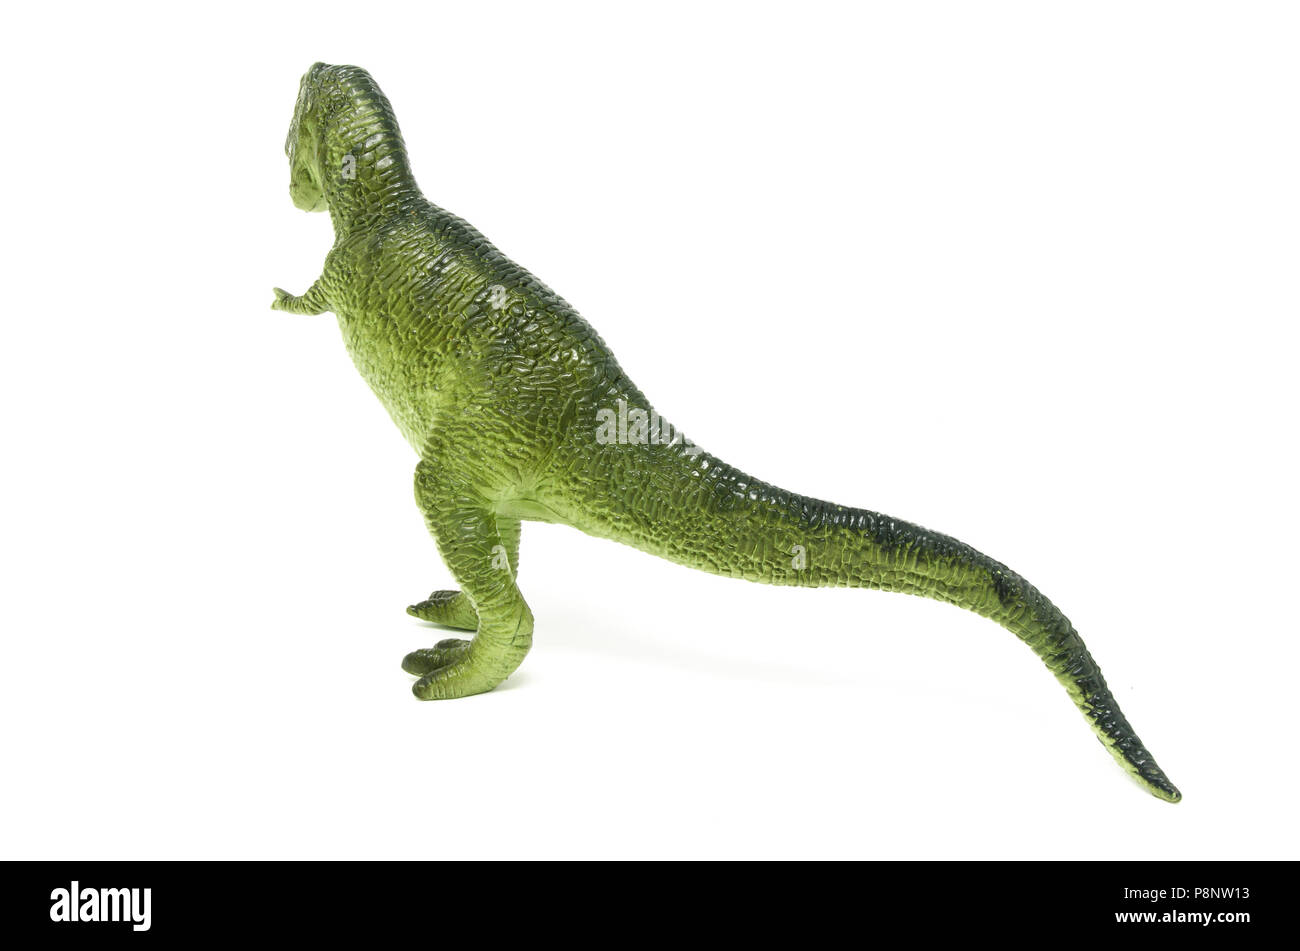 Retour de vert en plastique jouet dinosaure Tyrannosaurus rex, isolé sur un fond blanc. Banque D'Images